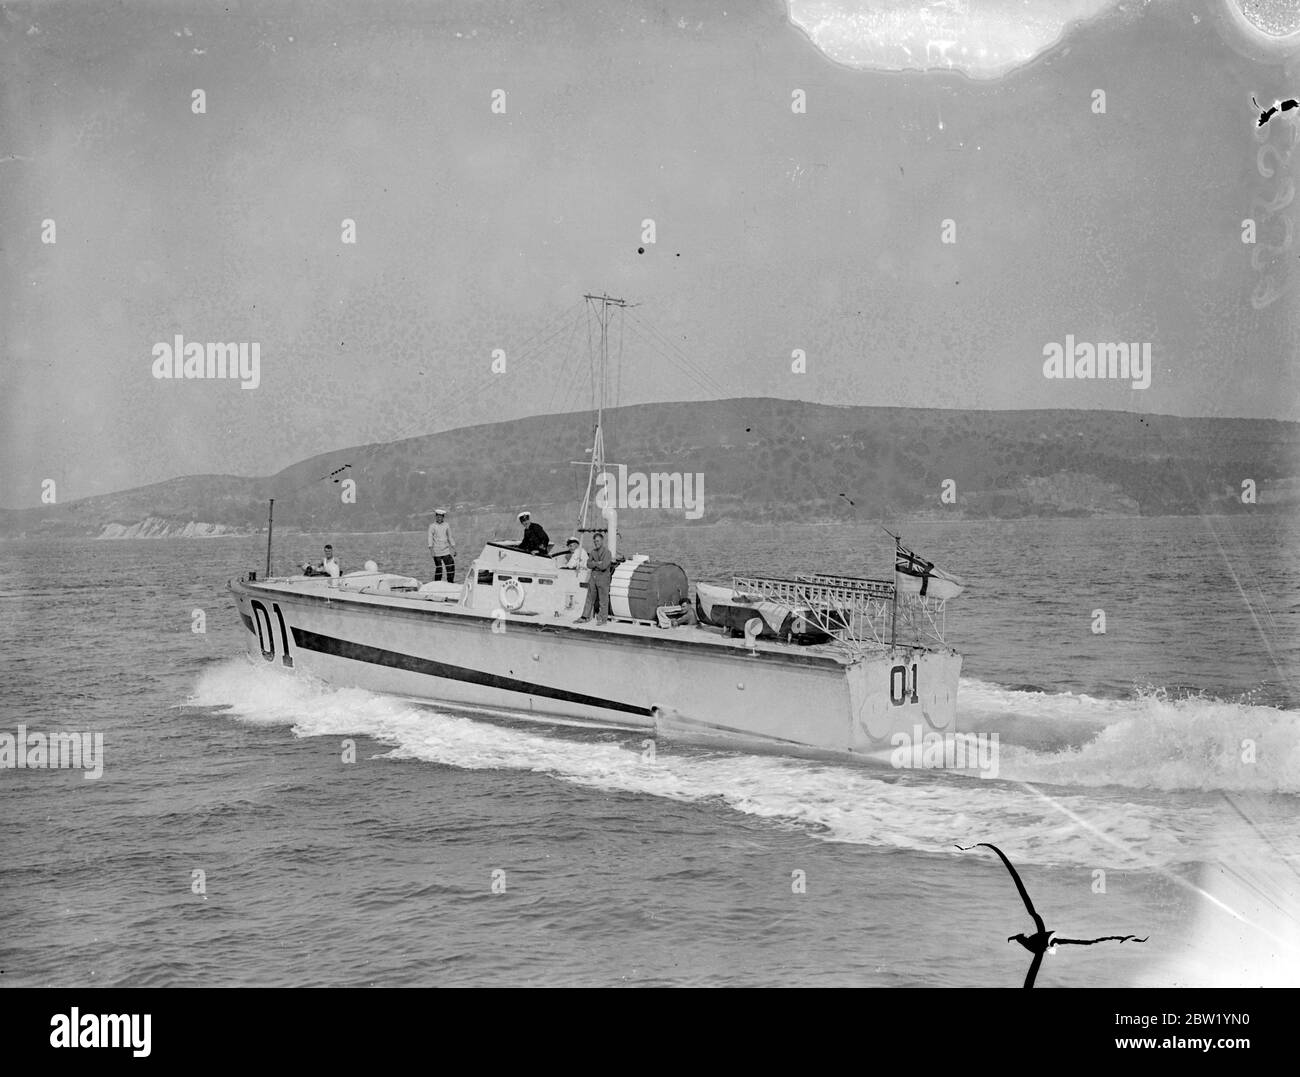 High-Speed-Motor Torpedo Boote verlassen nach Malta. Längste Reise, die jemals versucht wurde. Die längste Reise, die jemals von Schiffen ihres Typs unternommen wurde, eine Hochgeschwindigkeitsflotte von Motor-Torpedo-Booten, verließ Southampton in Richtung Malta. Die 15 Tonnen schweren Boote wurden von der britischen Motoryacht Co. Gebaut und haben eine Länge von 60 Fuß und eine Geschwindigkeit von schätzungsweise 40 Knoten. Jede trägt zwei 18 Zoll Torpedo-Truppen und mehrere Maschinengewehre. In der Flottille waren auch andere Boote, die den König und die Königin vor kurzem die Themse hinuntereskortierten. Foto zeigt, die Hochgeschwindigkeits-Motor Torpedo Boote vorbei, Shanklin , auf der Isle of Wight, auf thei Stockfoto